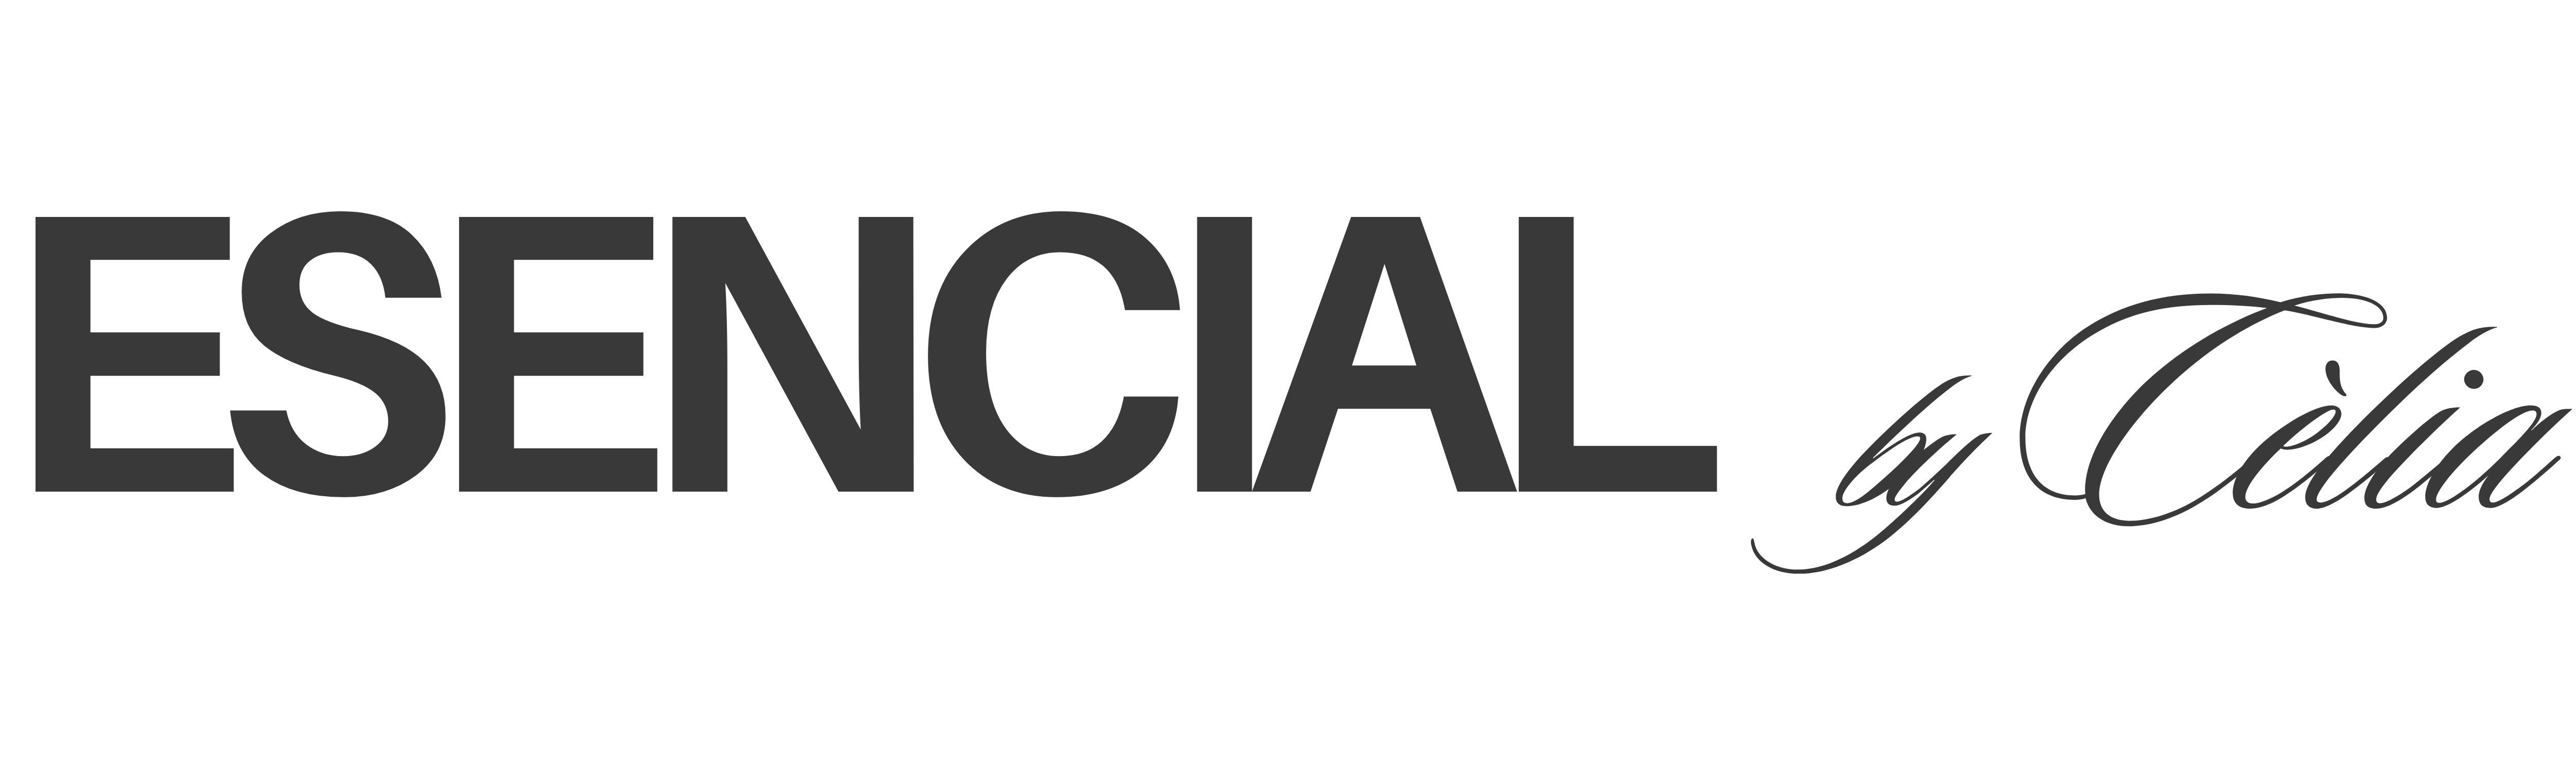 Esencial by Cèlia, logo oficial